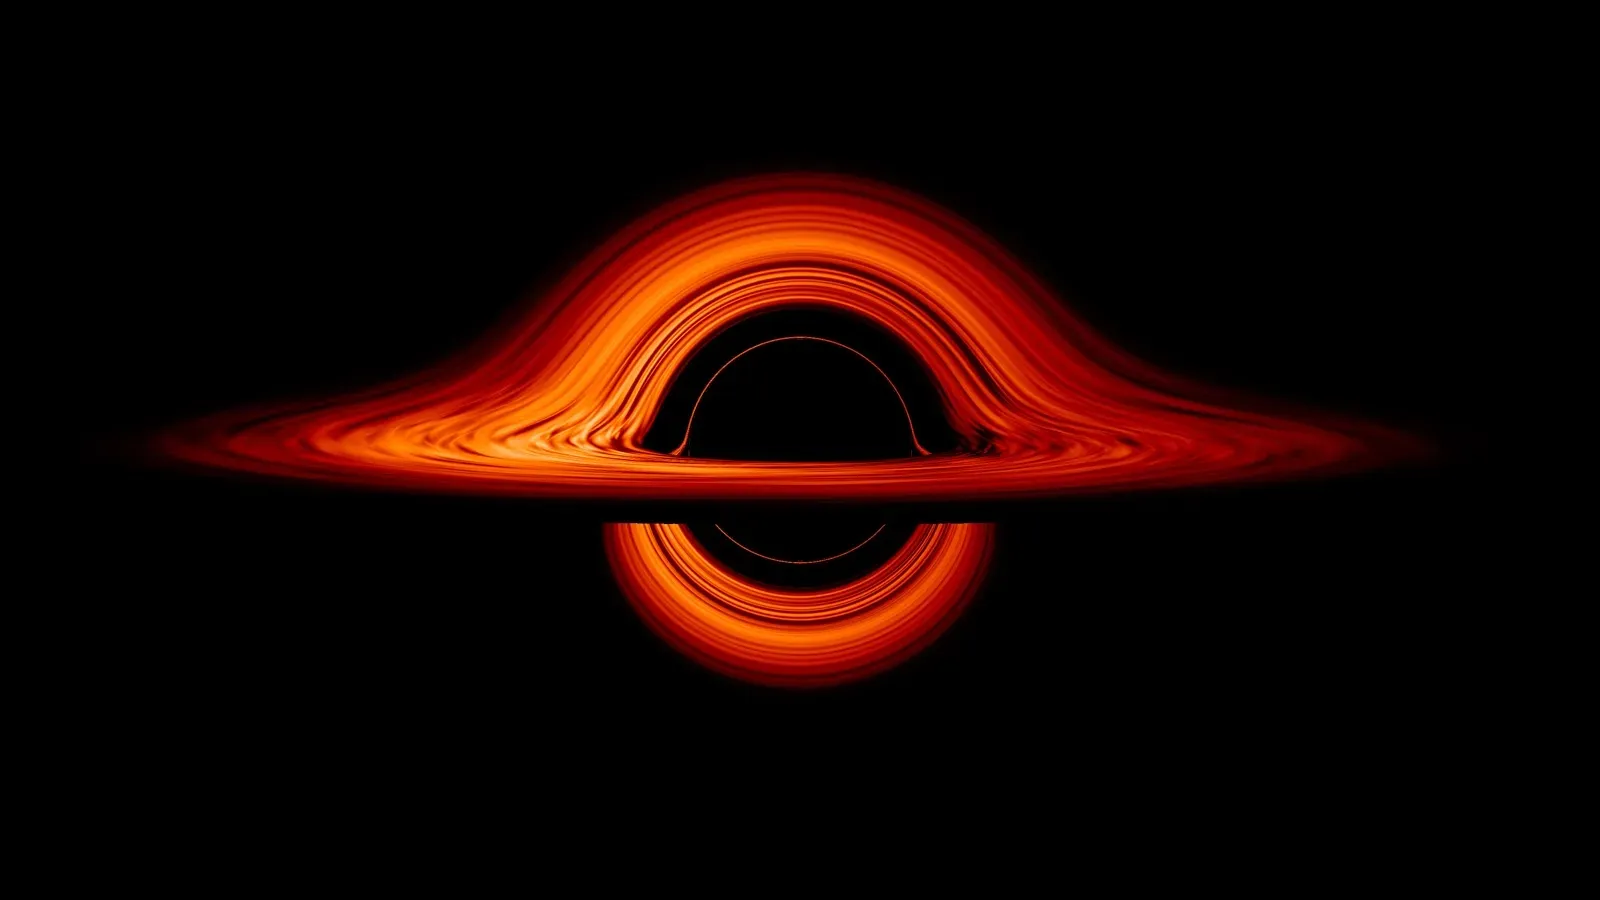 Из-за гравитационных отклонений свет огибает черную дыру так, что для наблюдателя кажется, будто ее задний край приподнят кверху